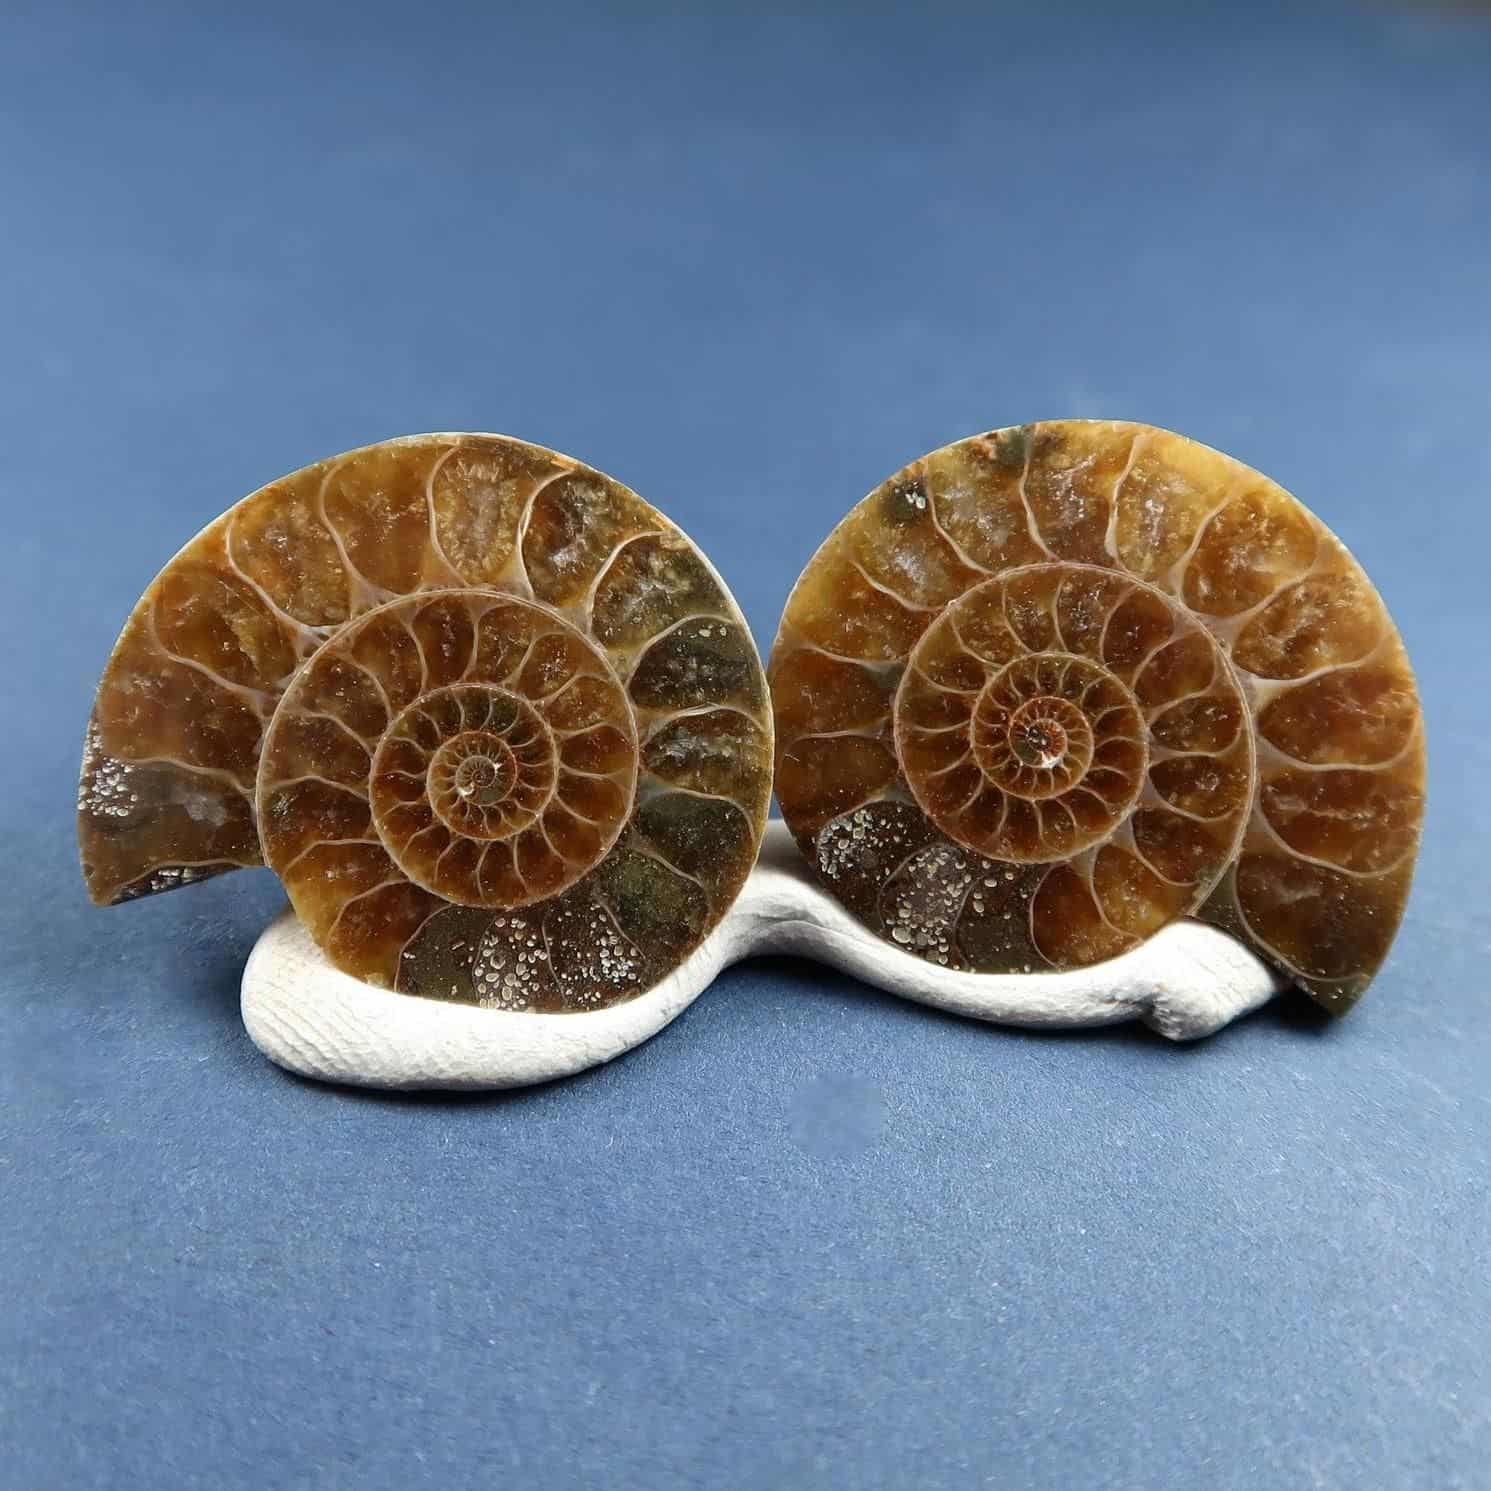 Fossilised Ammonite Specimens - Buy Ammonite Fossils Online